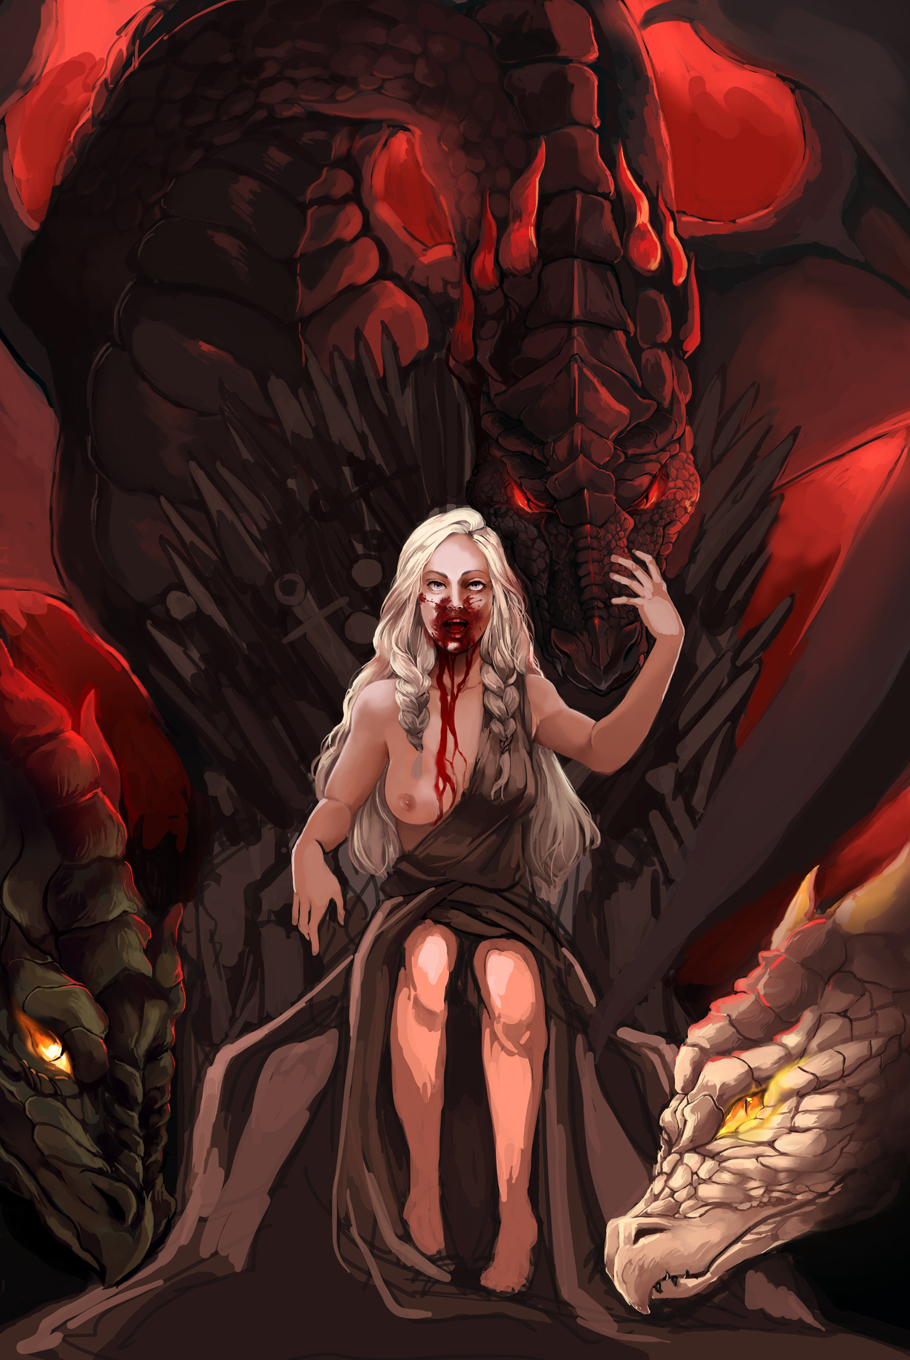 Ебет раком мать драконов из игры престолов